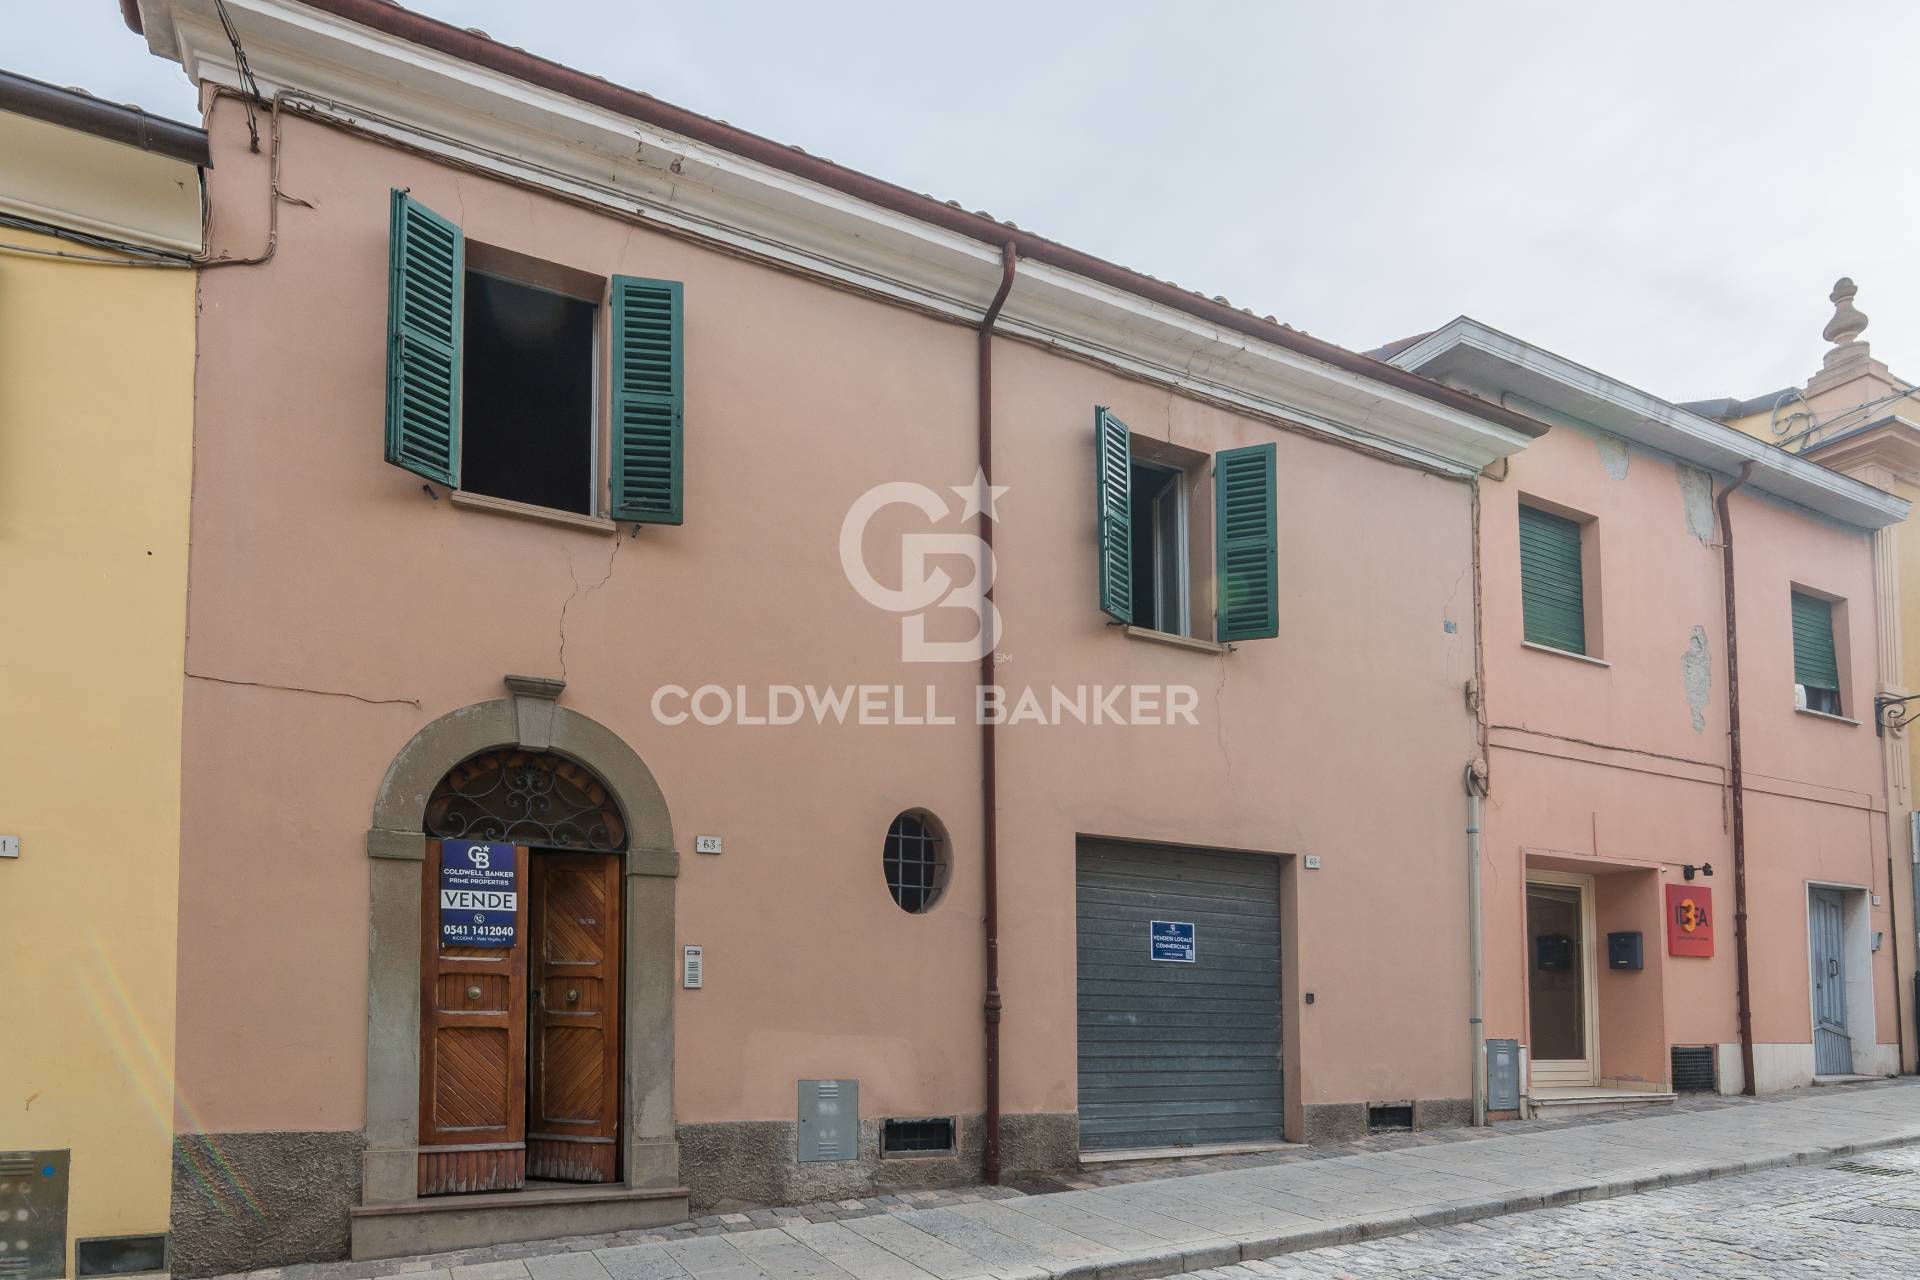 Appartamento in vendita Rimini